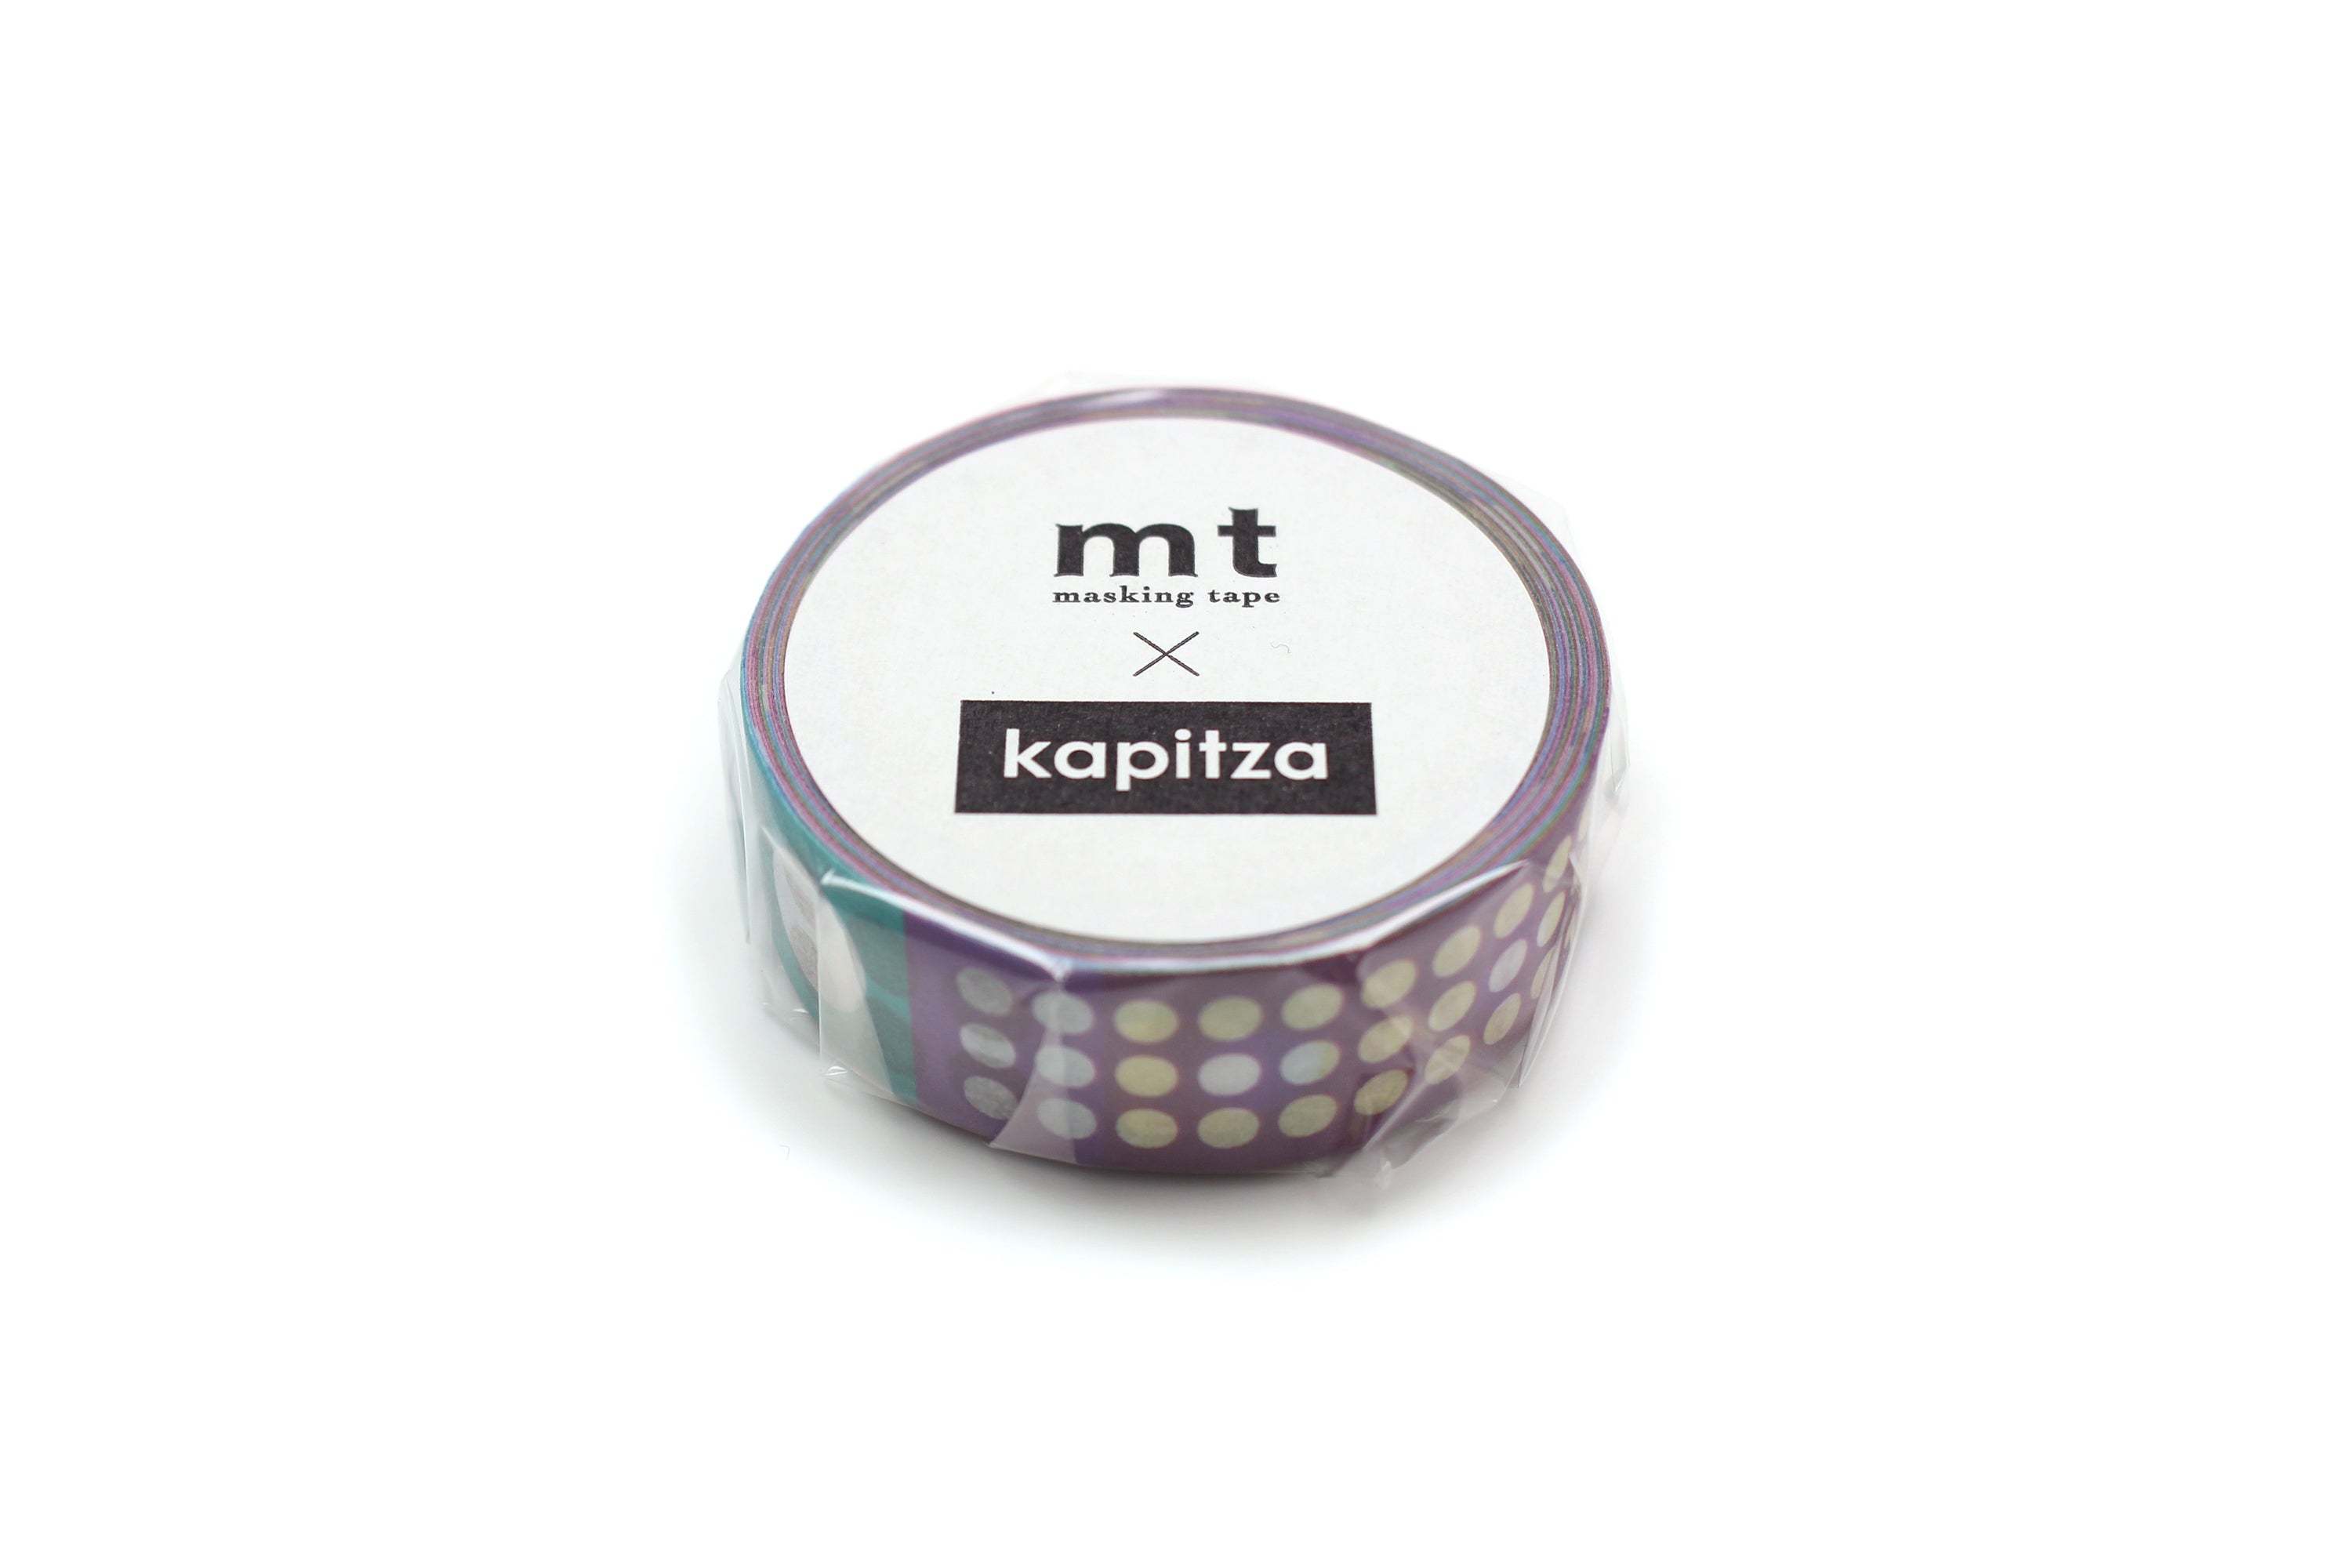 MT Masking Tape - Kapitza Polka Dot Vivid-Maskingtape-DutchMills